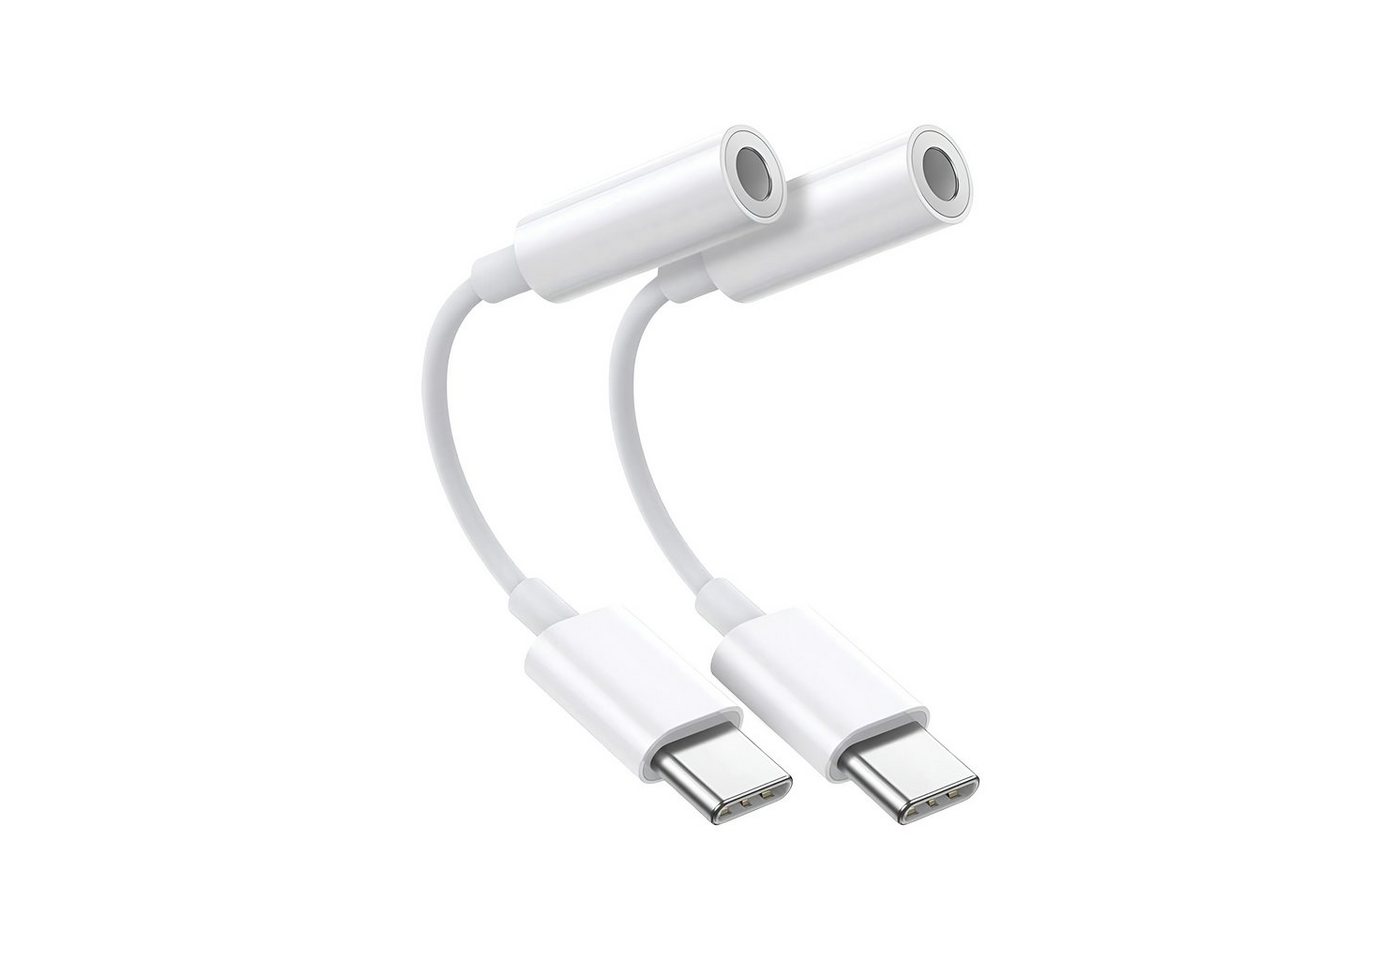 Cyoo 2er USB C auf AUX Audio Adapter Typ C Kabel 3,5mm Klinke Audio-Adapter USB-C, 3,5-mm-Klinke zu 3,5-mm-Klinke, USB-C, 11 cm, Handy Kopfhörer Audio-Adapter USB-C, Flexibel, Robust, Klinkenstecke von Cyoo